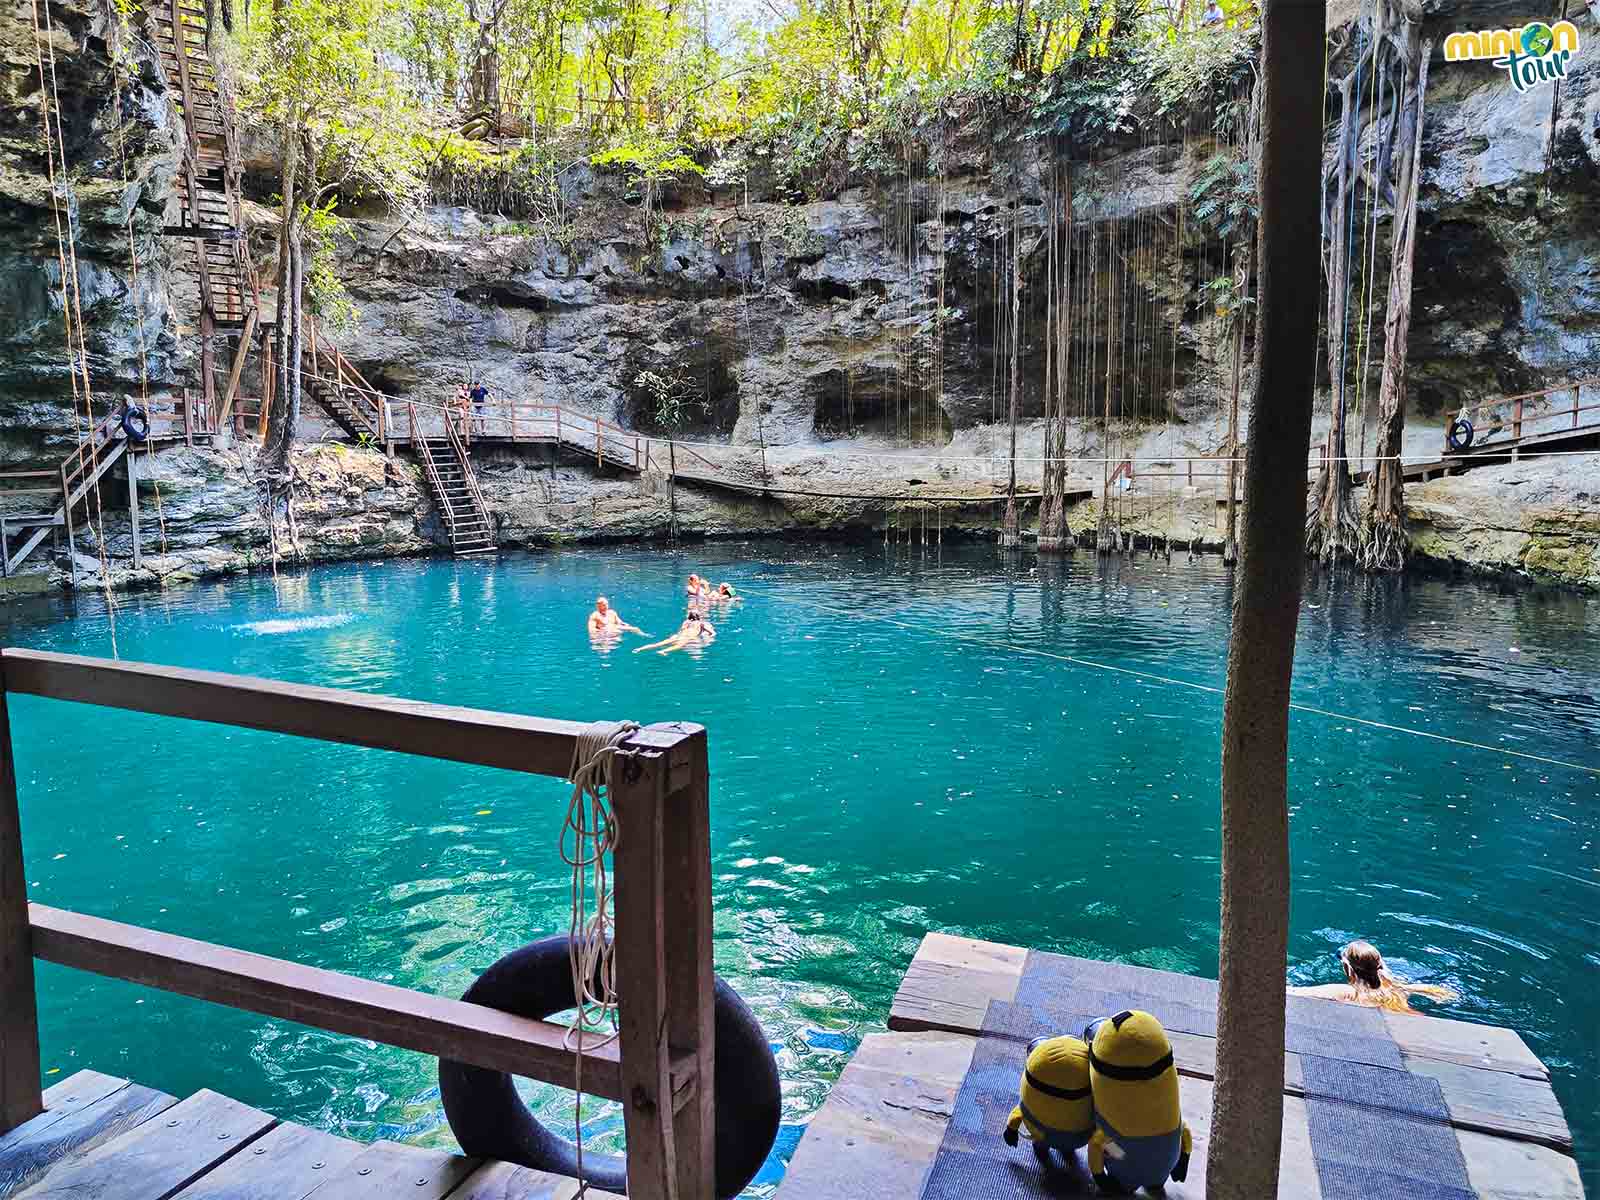 Una de las cosas que tienes que ver en Yucatán son sus cenotes